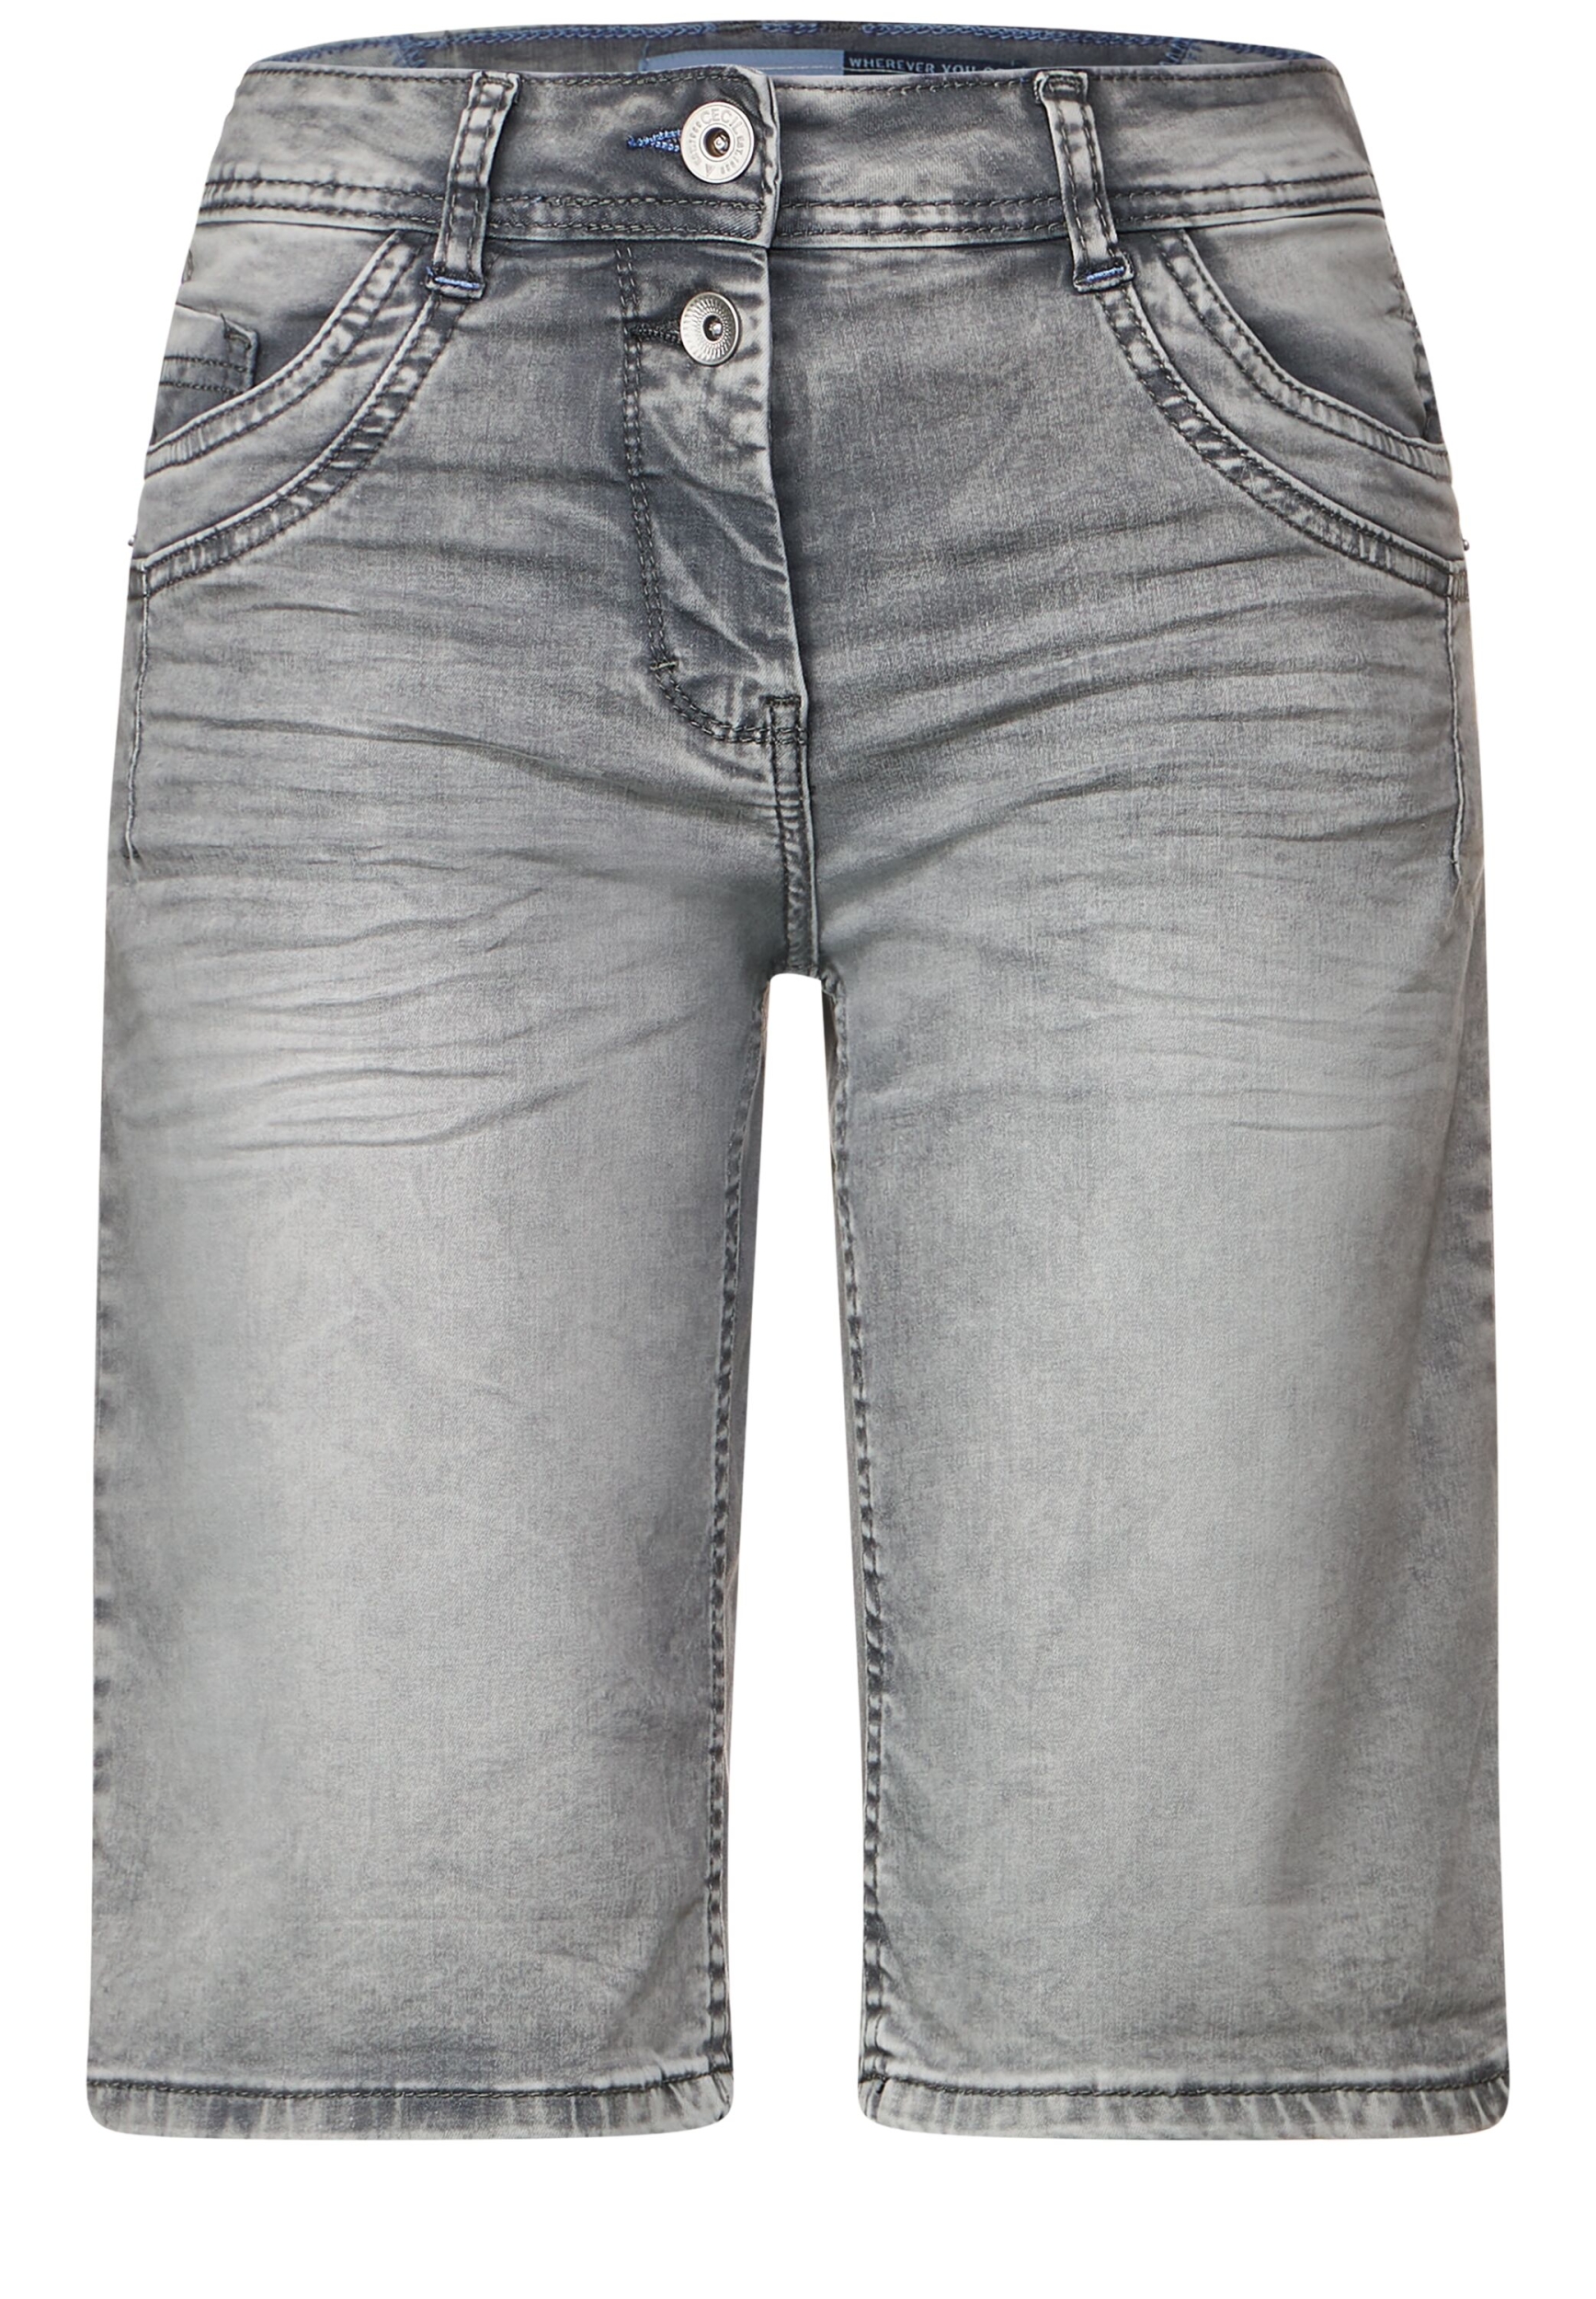 Style NOS Scarlett Shorts grey B376016-10573-34 Grey 34 washed | | 